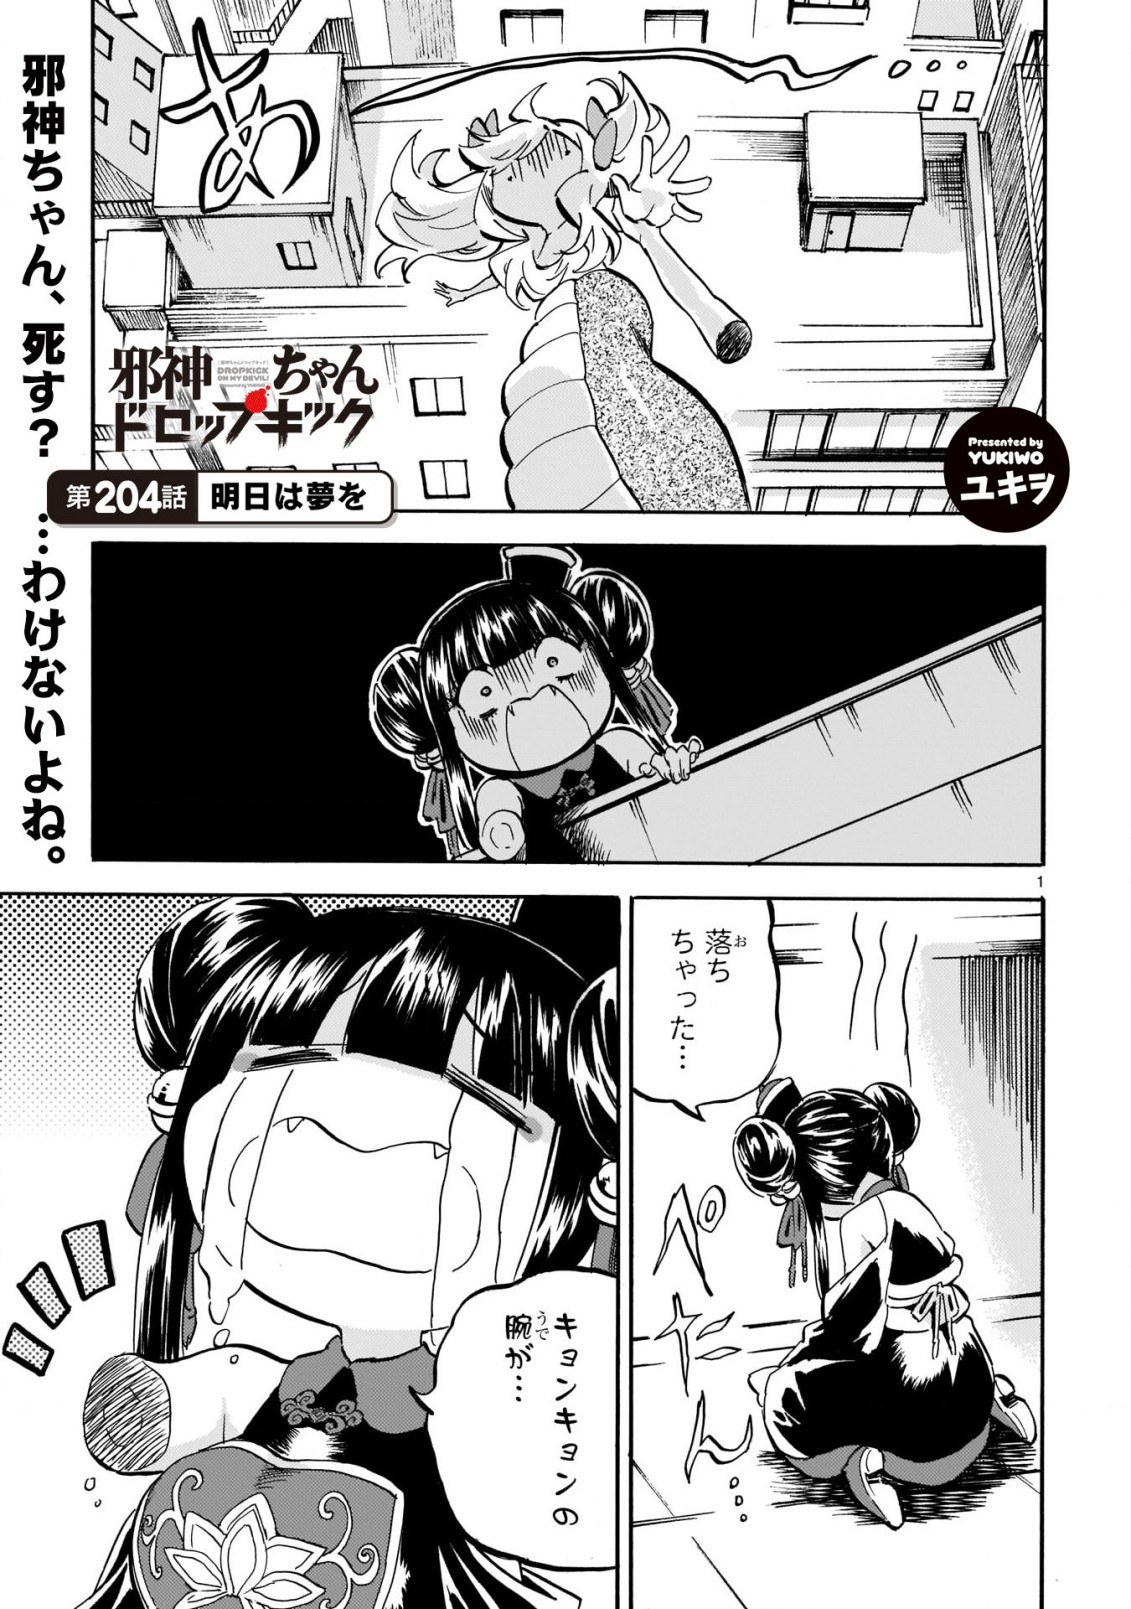 Jashin-chan Dropkick - Chapter 204 - Page 2